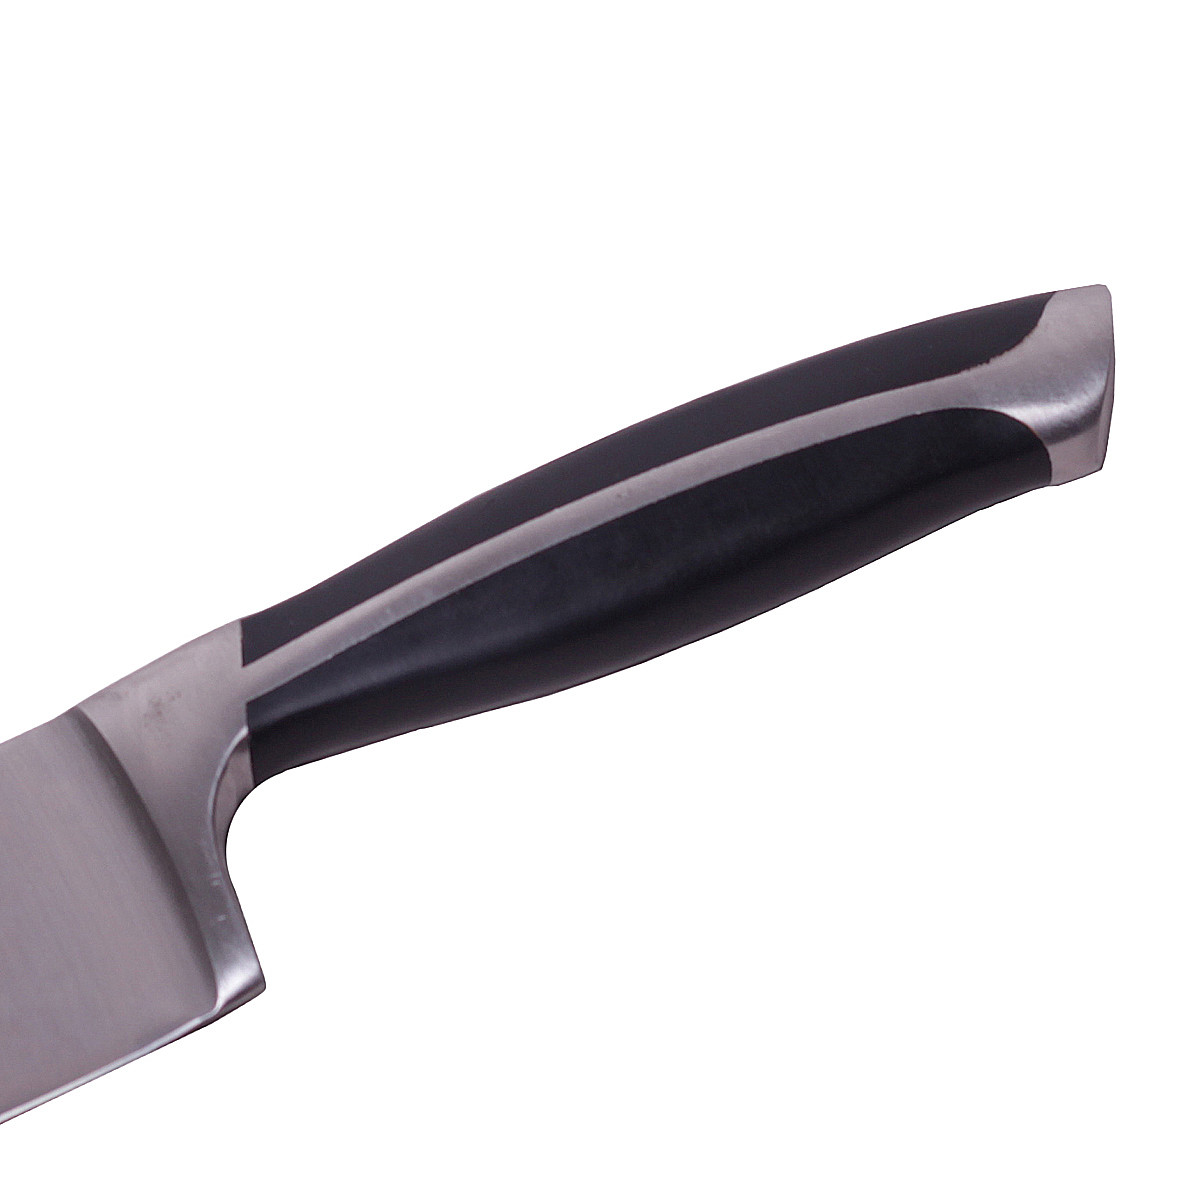  Фото №3 - Нож Шеф-повар из нержавеющей стали с ручкой из ABS. Артикул: 5120